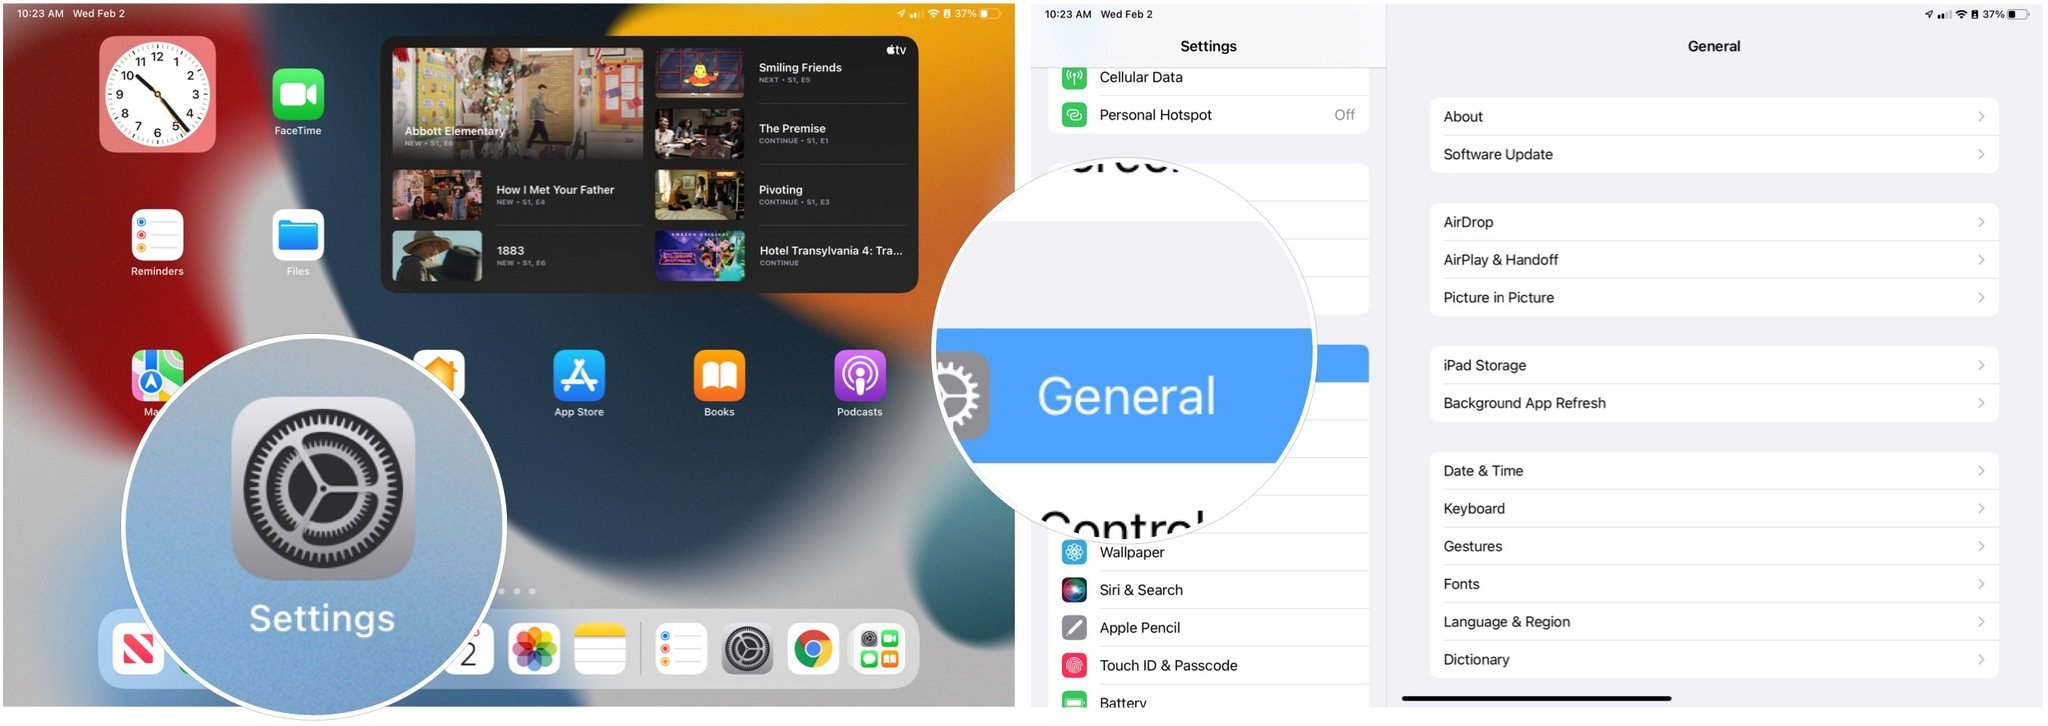 Pour configurer Universal Control sur iPad, ouvrez l'application Paramètres.  Choisissez ensuite Général dans le menu de gauche. 